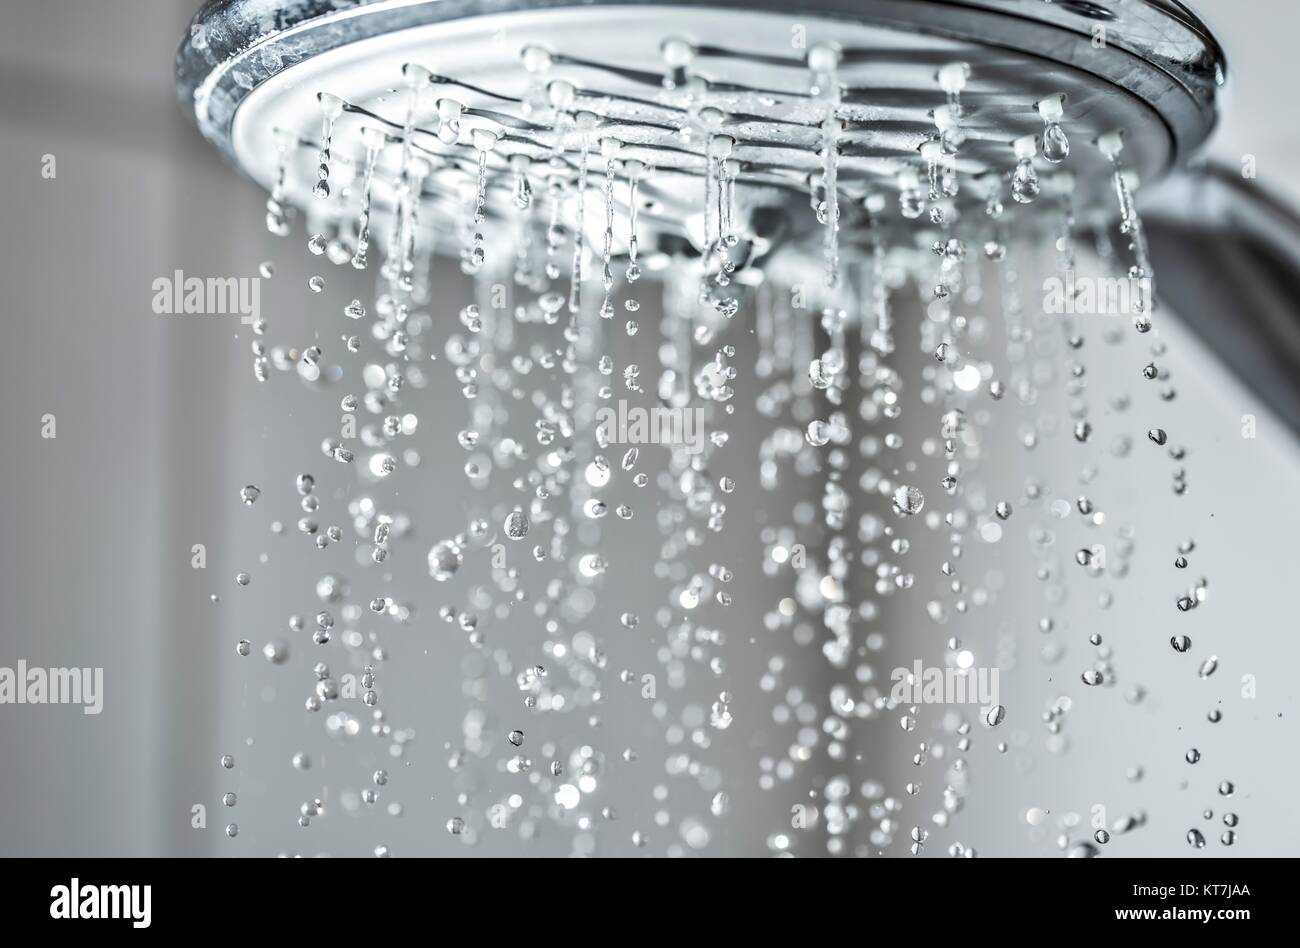 Wasserstrahl aus einem Duschkopf im Badezimmer Stock Photo